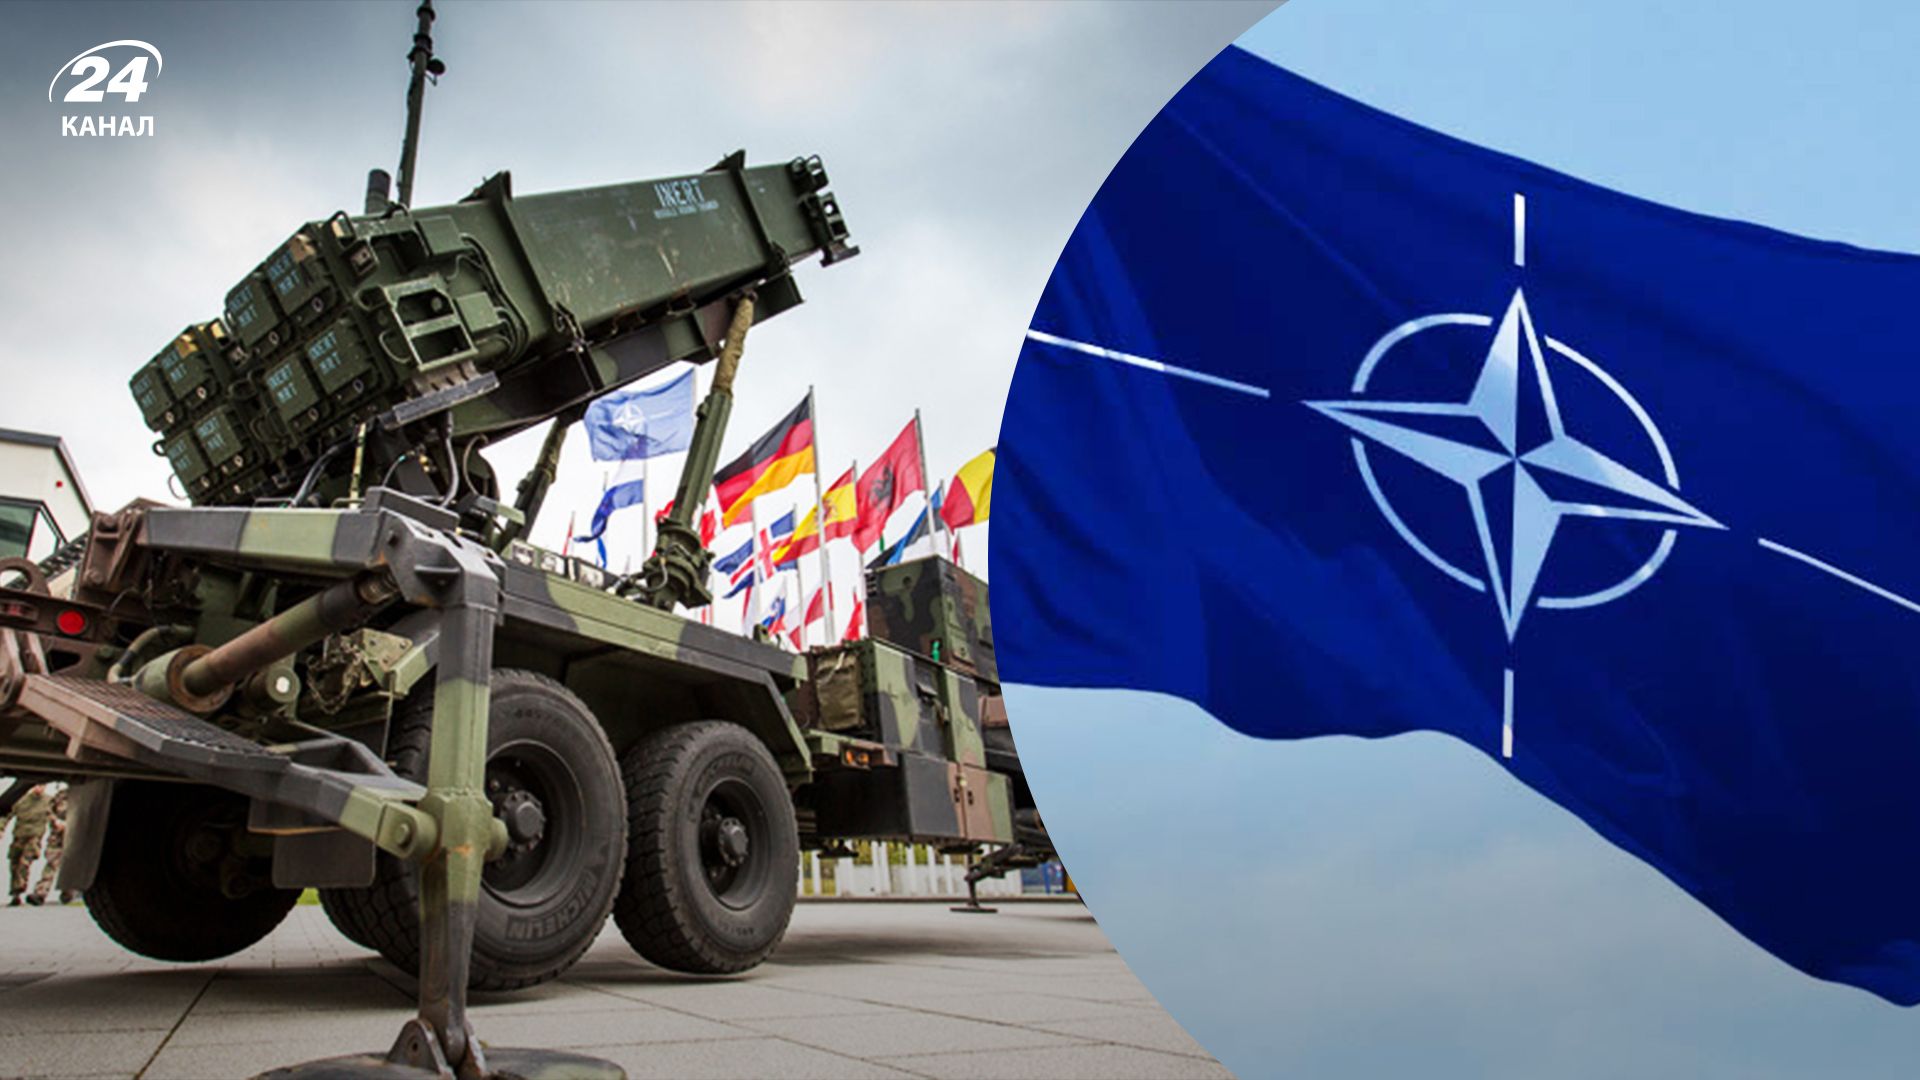 Bild рассказала, что НАТО обсуждают возможность защитить небо над Западом Украины